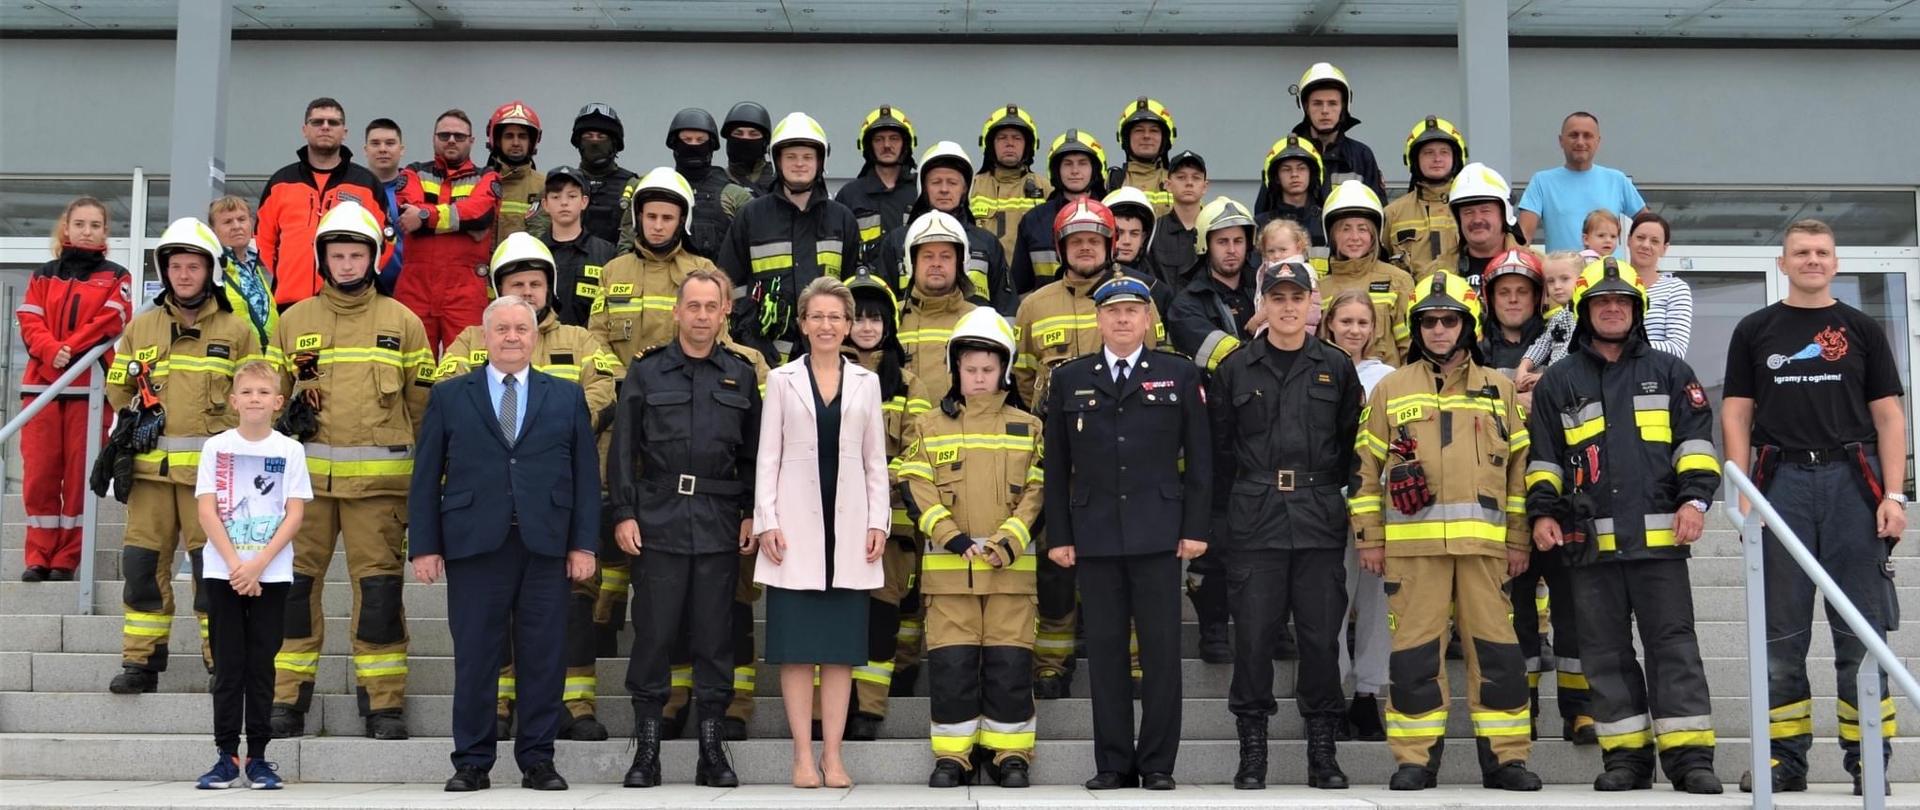 Zdjęcie grupowe ,,Honorowa Wspinaczka 11 września" przy kampusie Politechniki Koszalińskiej